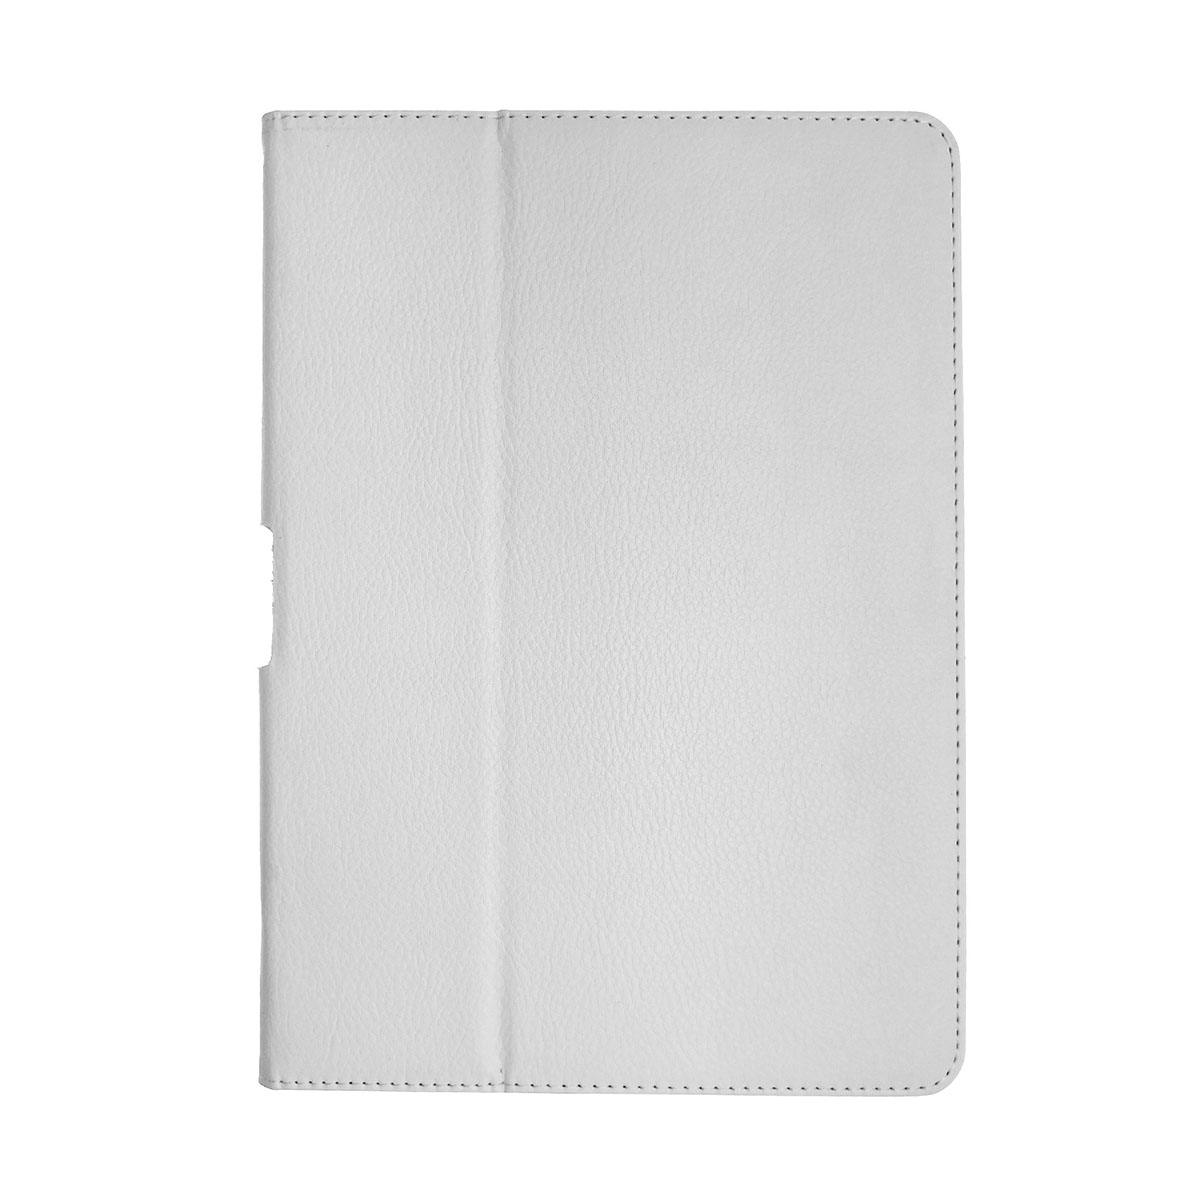 Чехол книжка для SAMSUNG Galaxy Tab 2 10.1 (P5100, P5110), экокожа, цвет белый.